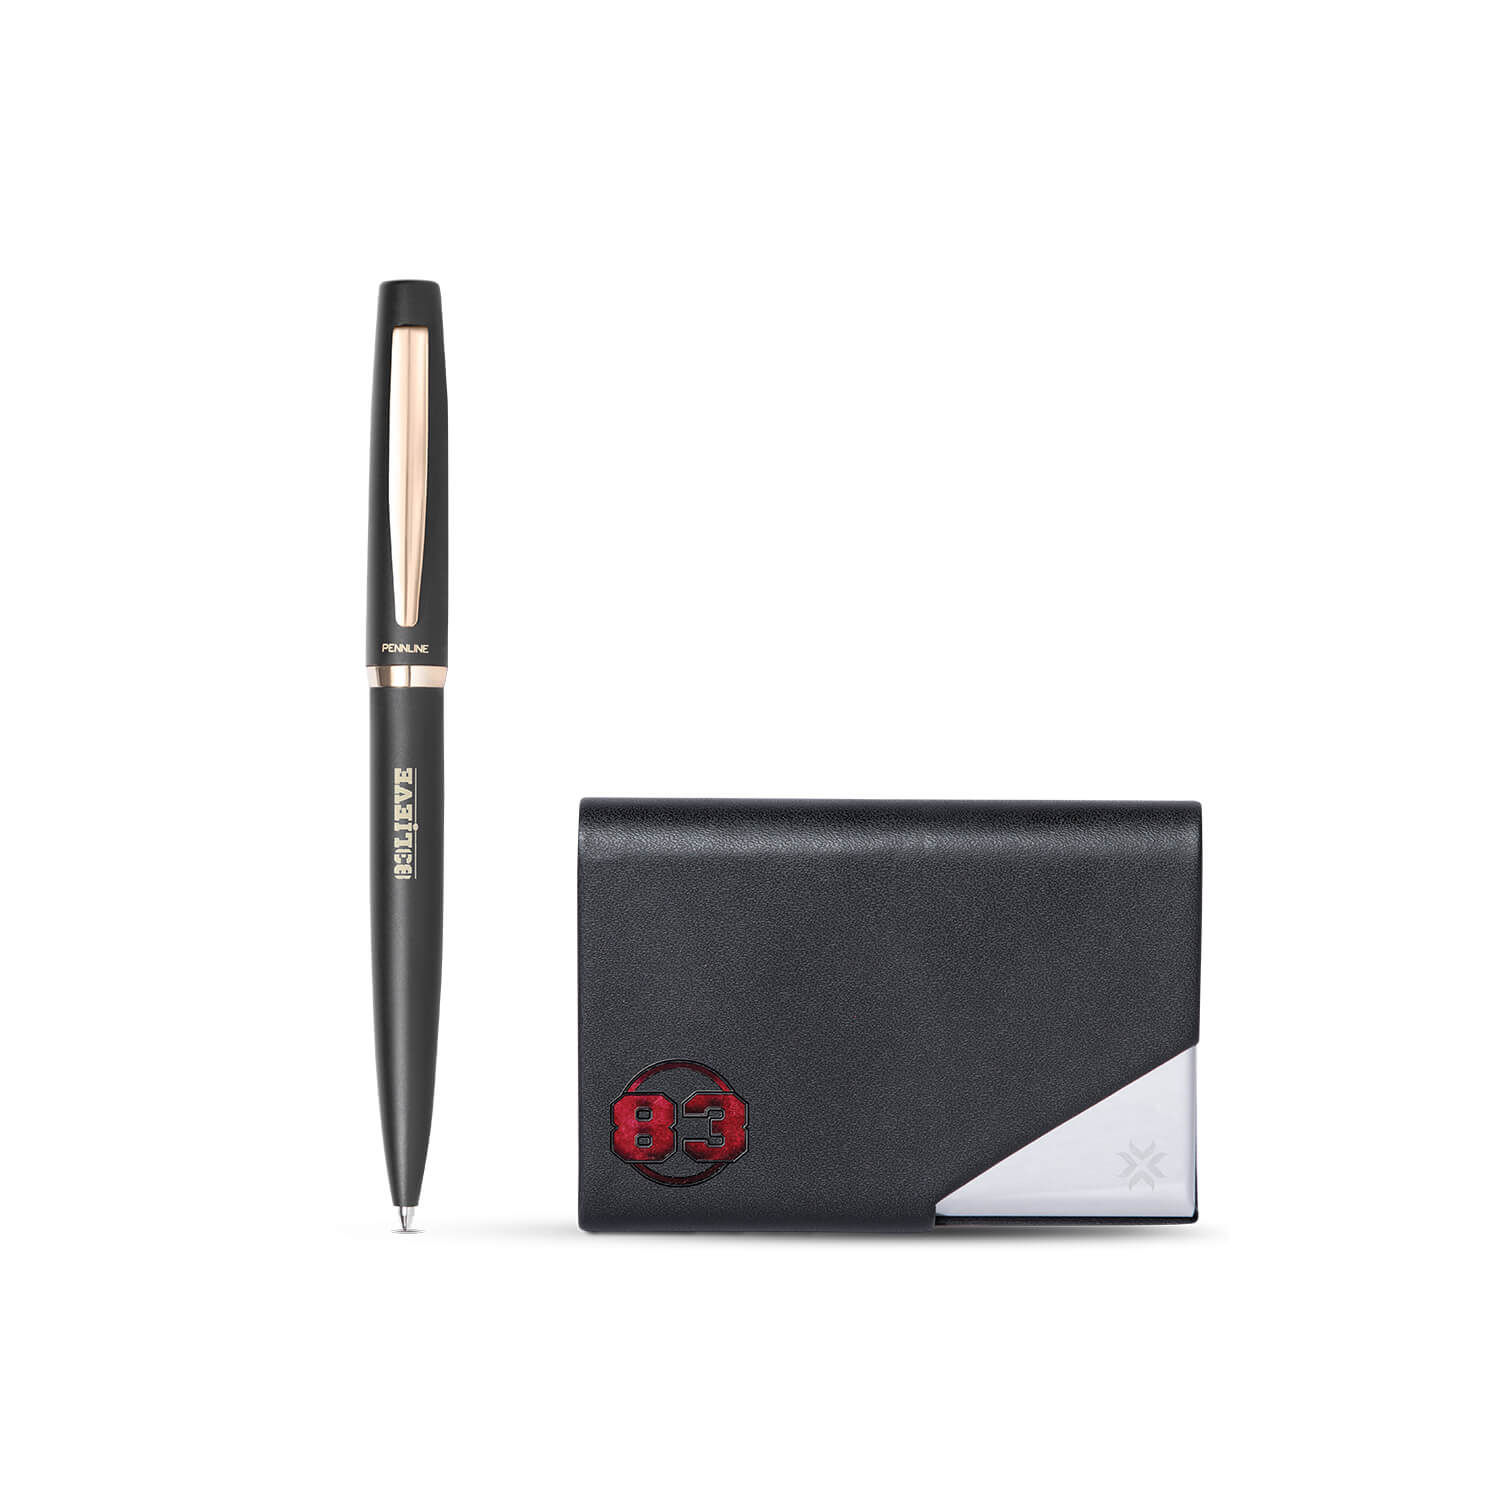 Pennline Gift Set 83 Pennline Ballpoint Pen And Business Card Holder - Black, Gold And Chrome